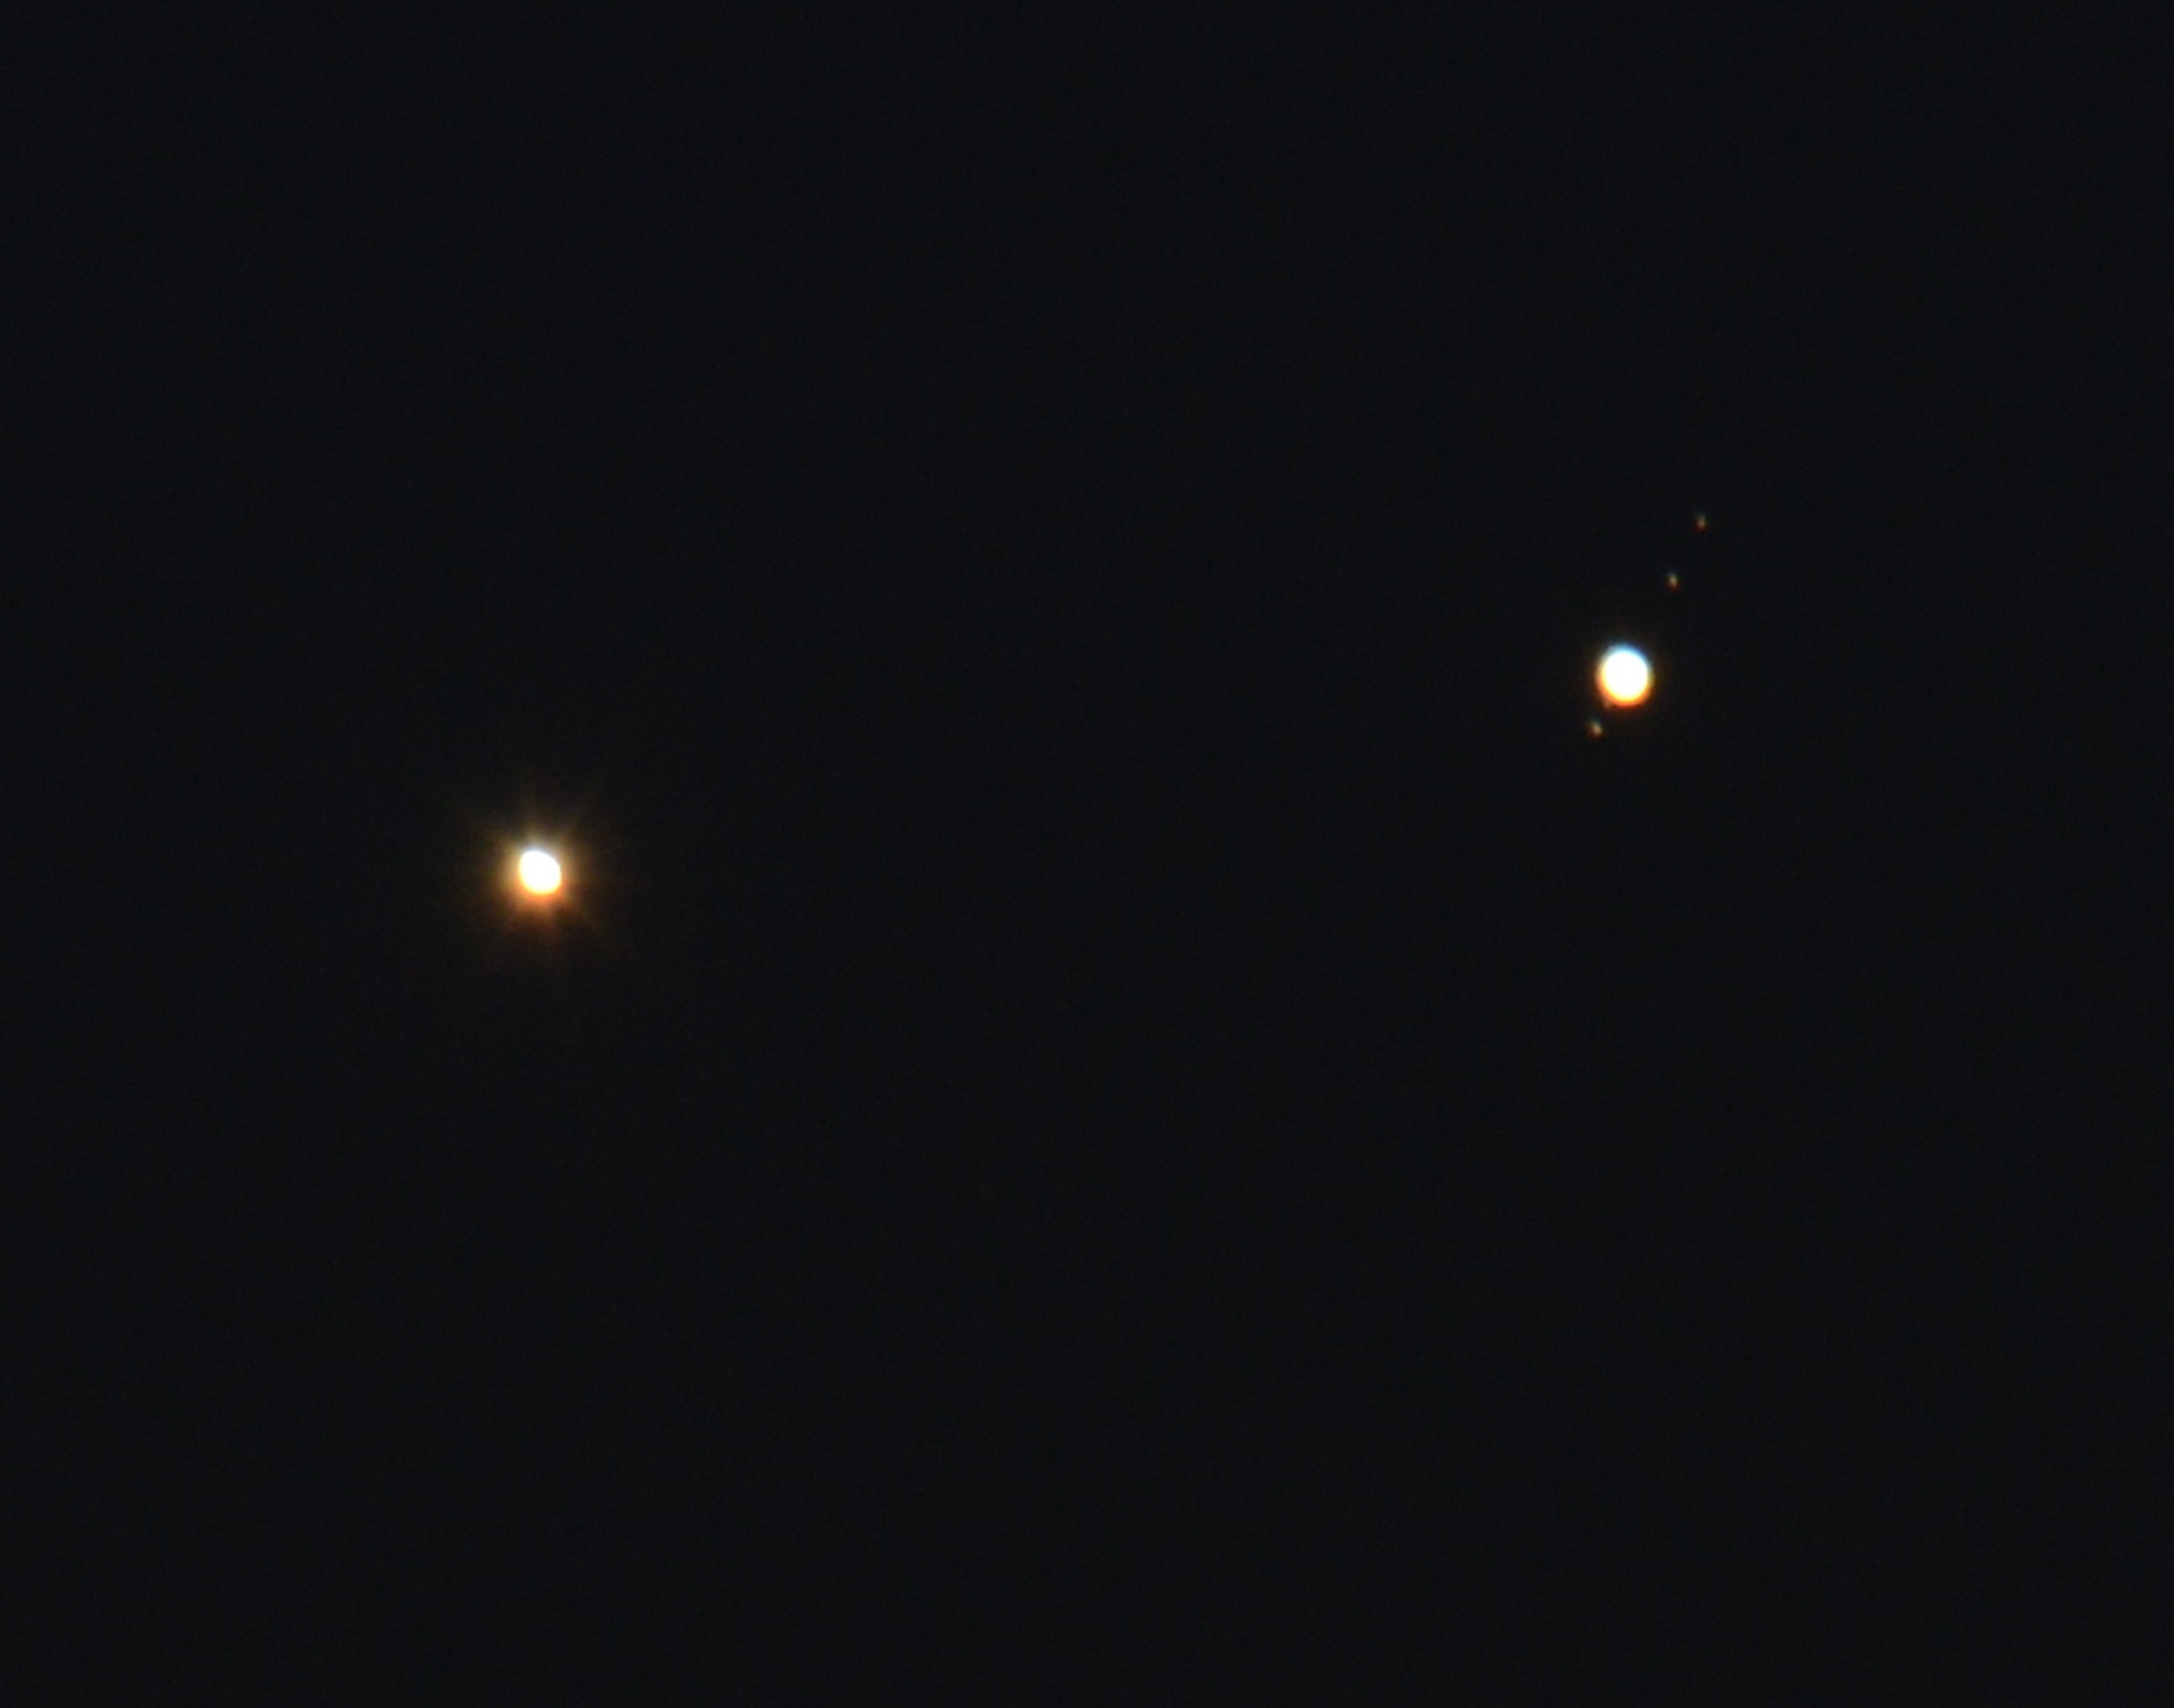 Ngày 18/08/2014, trên bầu trời trước lúc bình minh của New York, Kim Tinh (trái) và Mộc Tinh (phải) cùng mọc lên và giao hội một cách hiếm hoi. Hai hành tinh cách nhau khoảng 0.25 độ khi nhìn từ Trái Đất. Ngoài ra còn có các vệ tinh của Mộc Tinh (từ trên xuống dưới, từ phải sang trái): Europa, Io, Callisto (gần hành tinh) và Ganymede. (Ảnh: STAN HONDA/AFP/Getty Images)